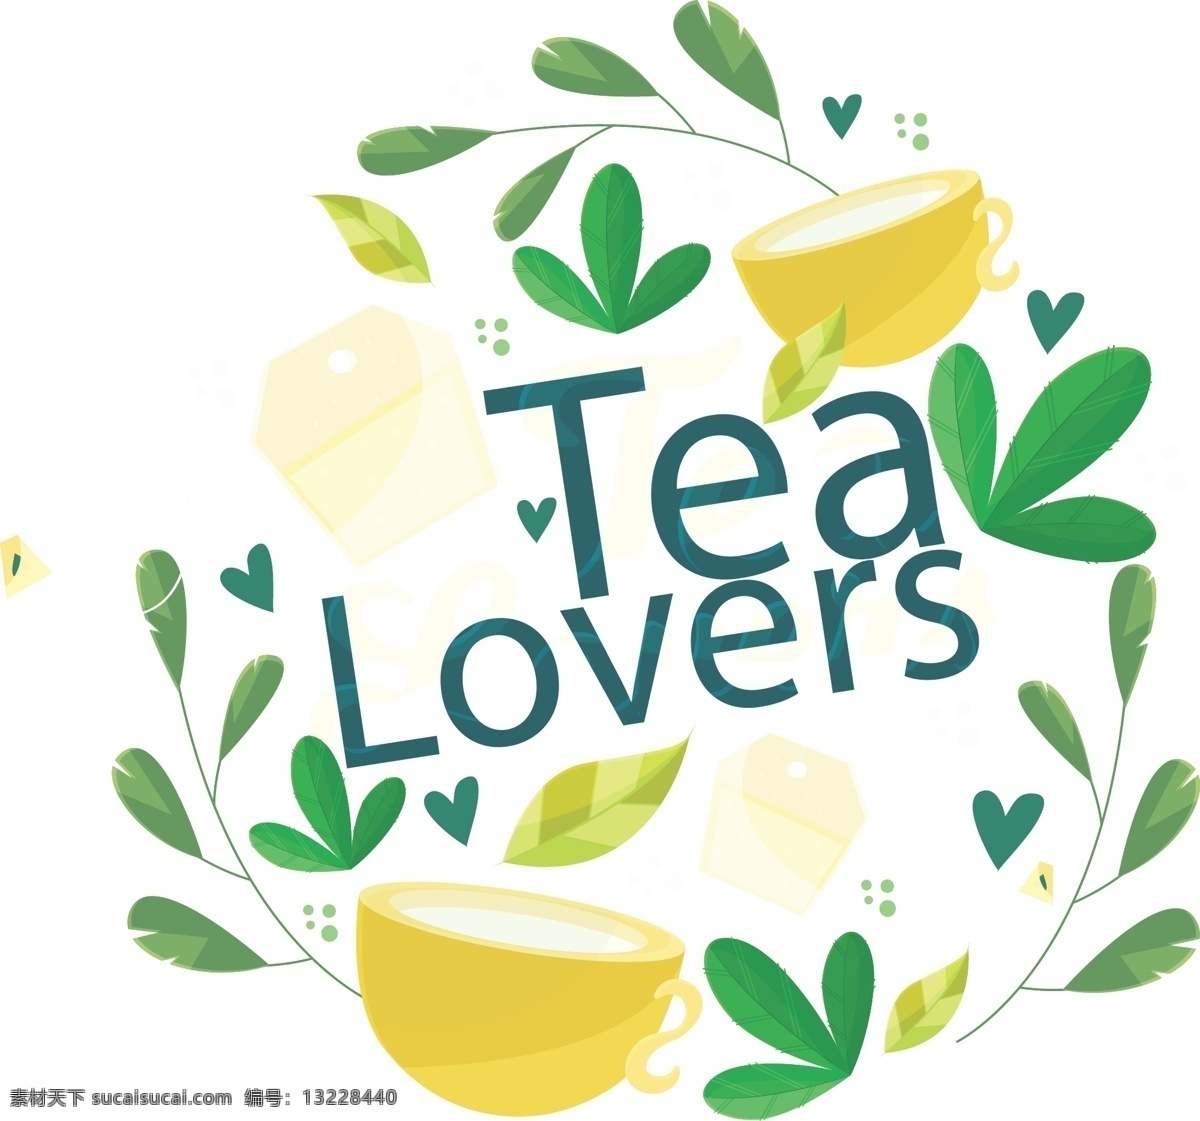 秋季 养生 黄色 茶杯 秋季养生 黄色茶杯 黄色茶壶 袋泡茶 叶子 logo设计